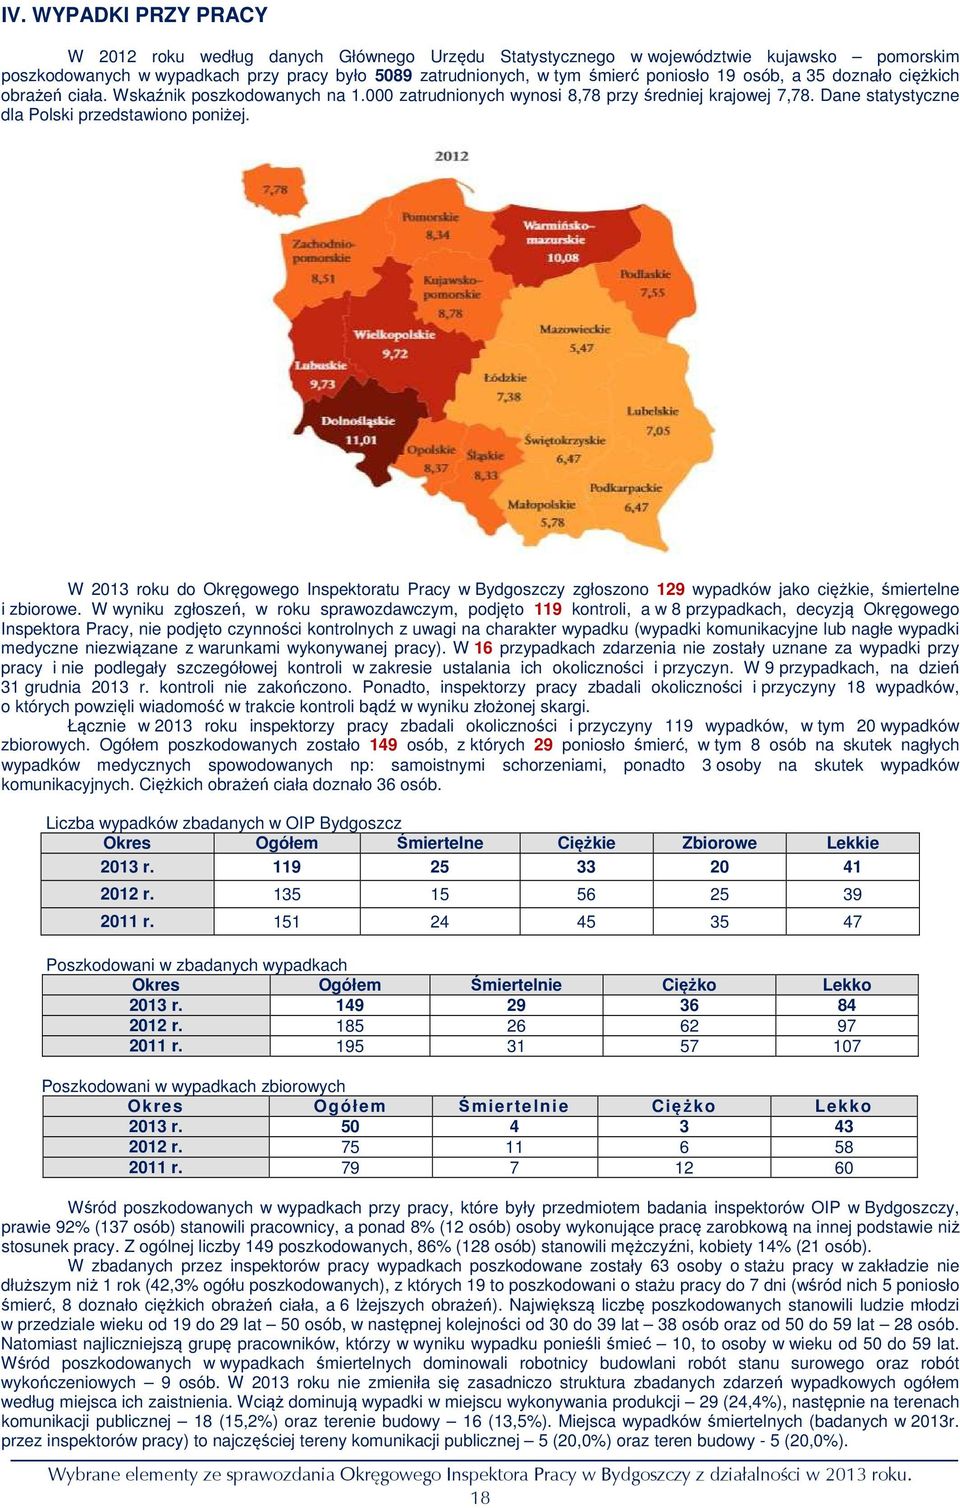 W 2013 roku do Okręgowego Inspektoratu Pracy w Bydgoszczy zgłoszono 129 wypadków jako ciężkie, śmiertelne i zbiorowe.